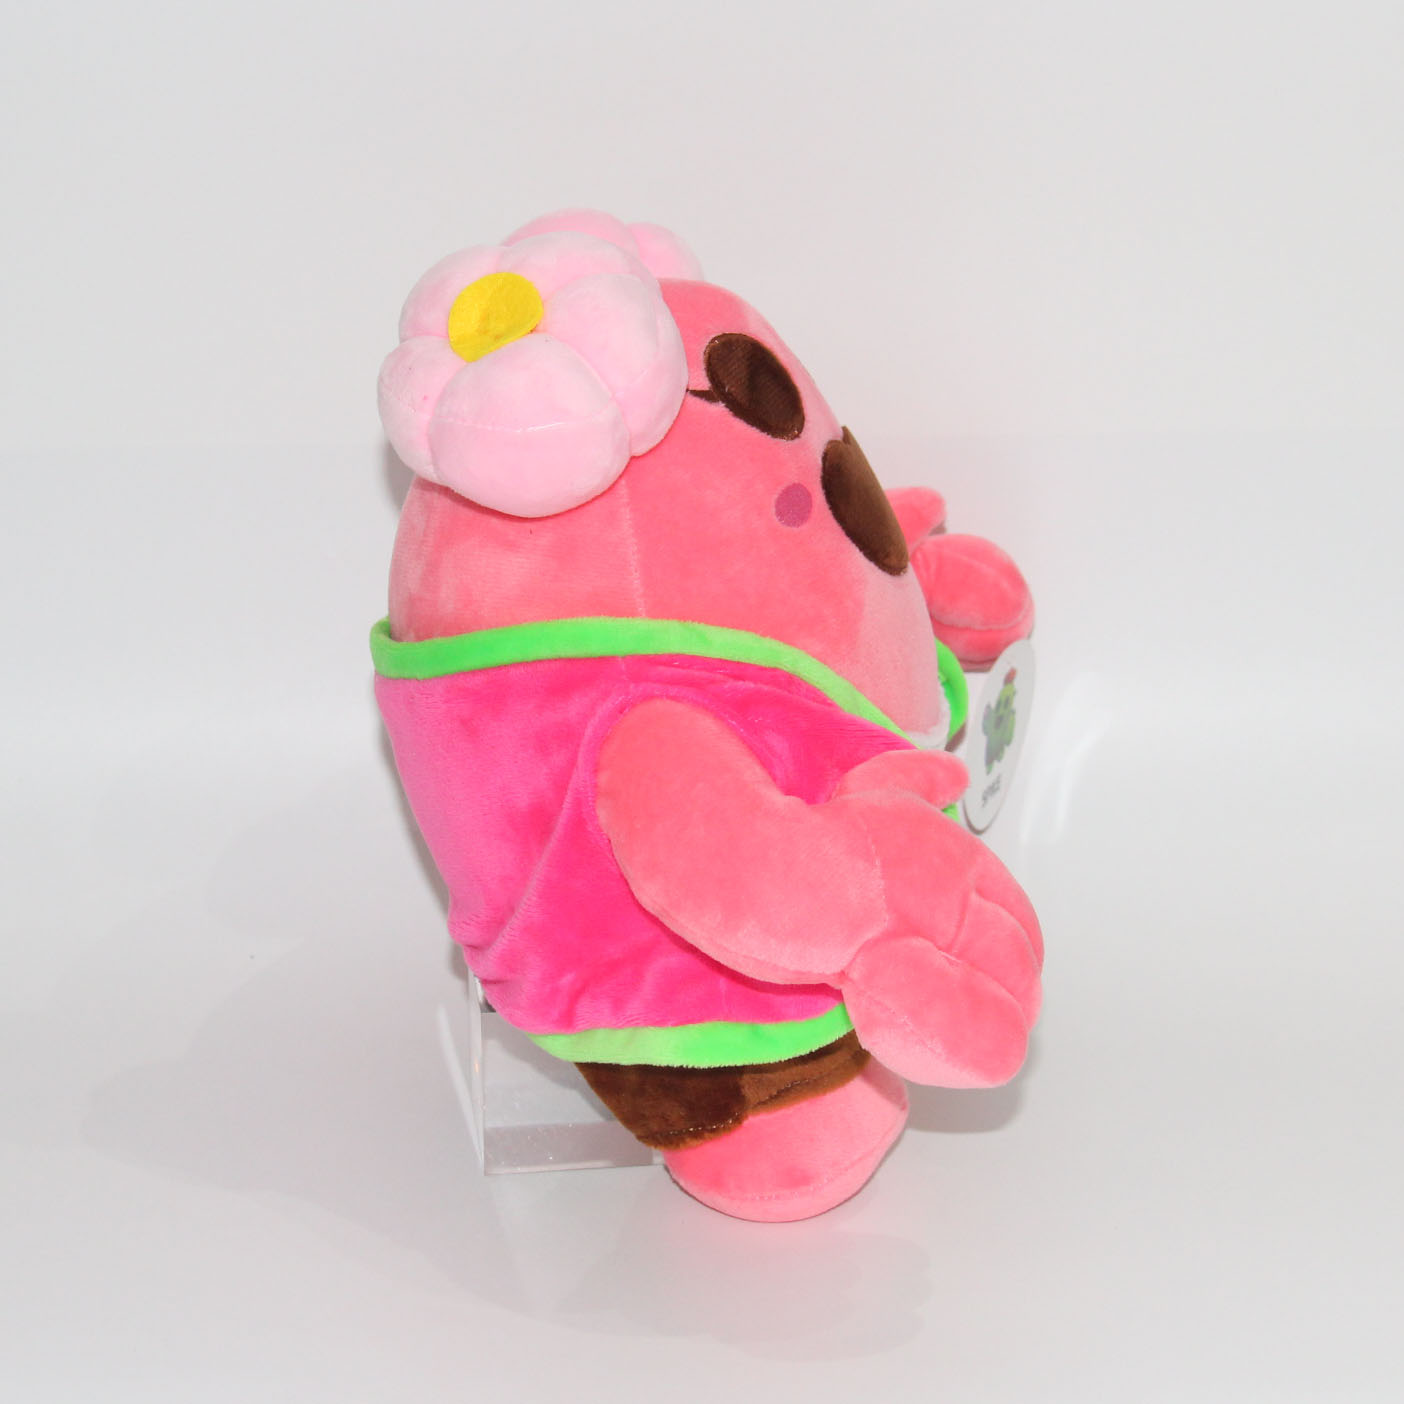  Sakura Spike Plush Bloster : Toys & Games